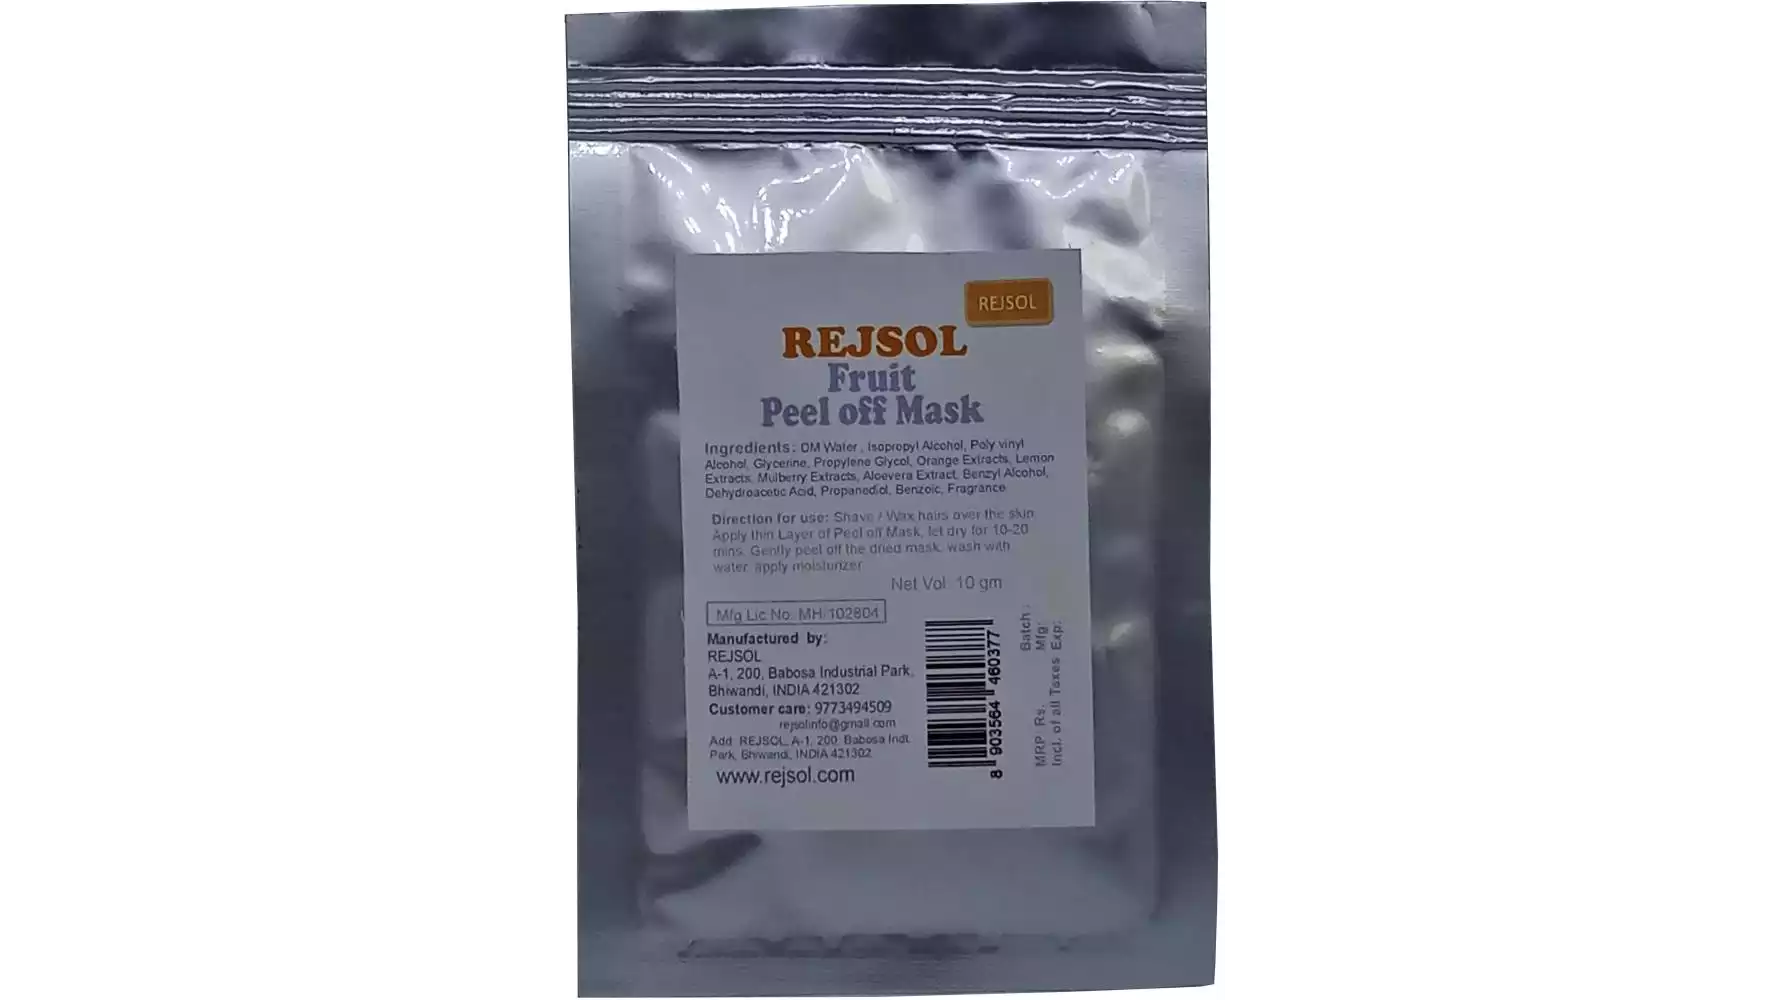 Rejsol Fruit Peel Off Mask (10g, Pack of 10)